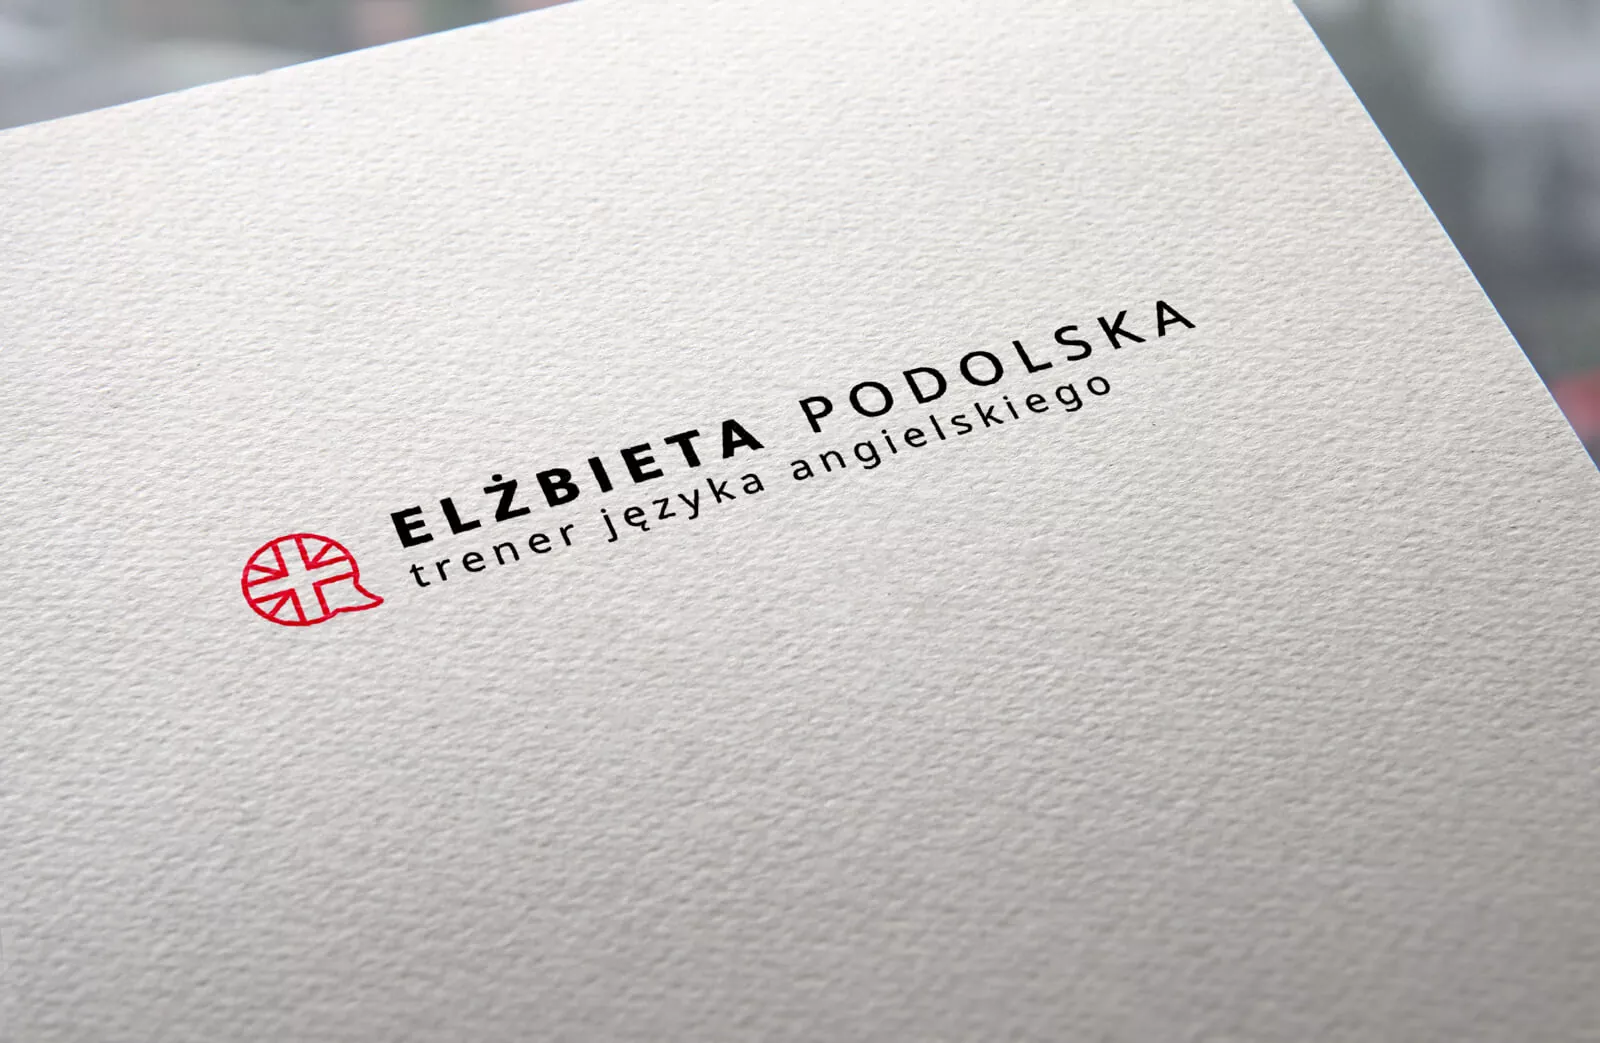 Elżbieta Podolska - projekt identyfikacji wizaulnej